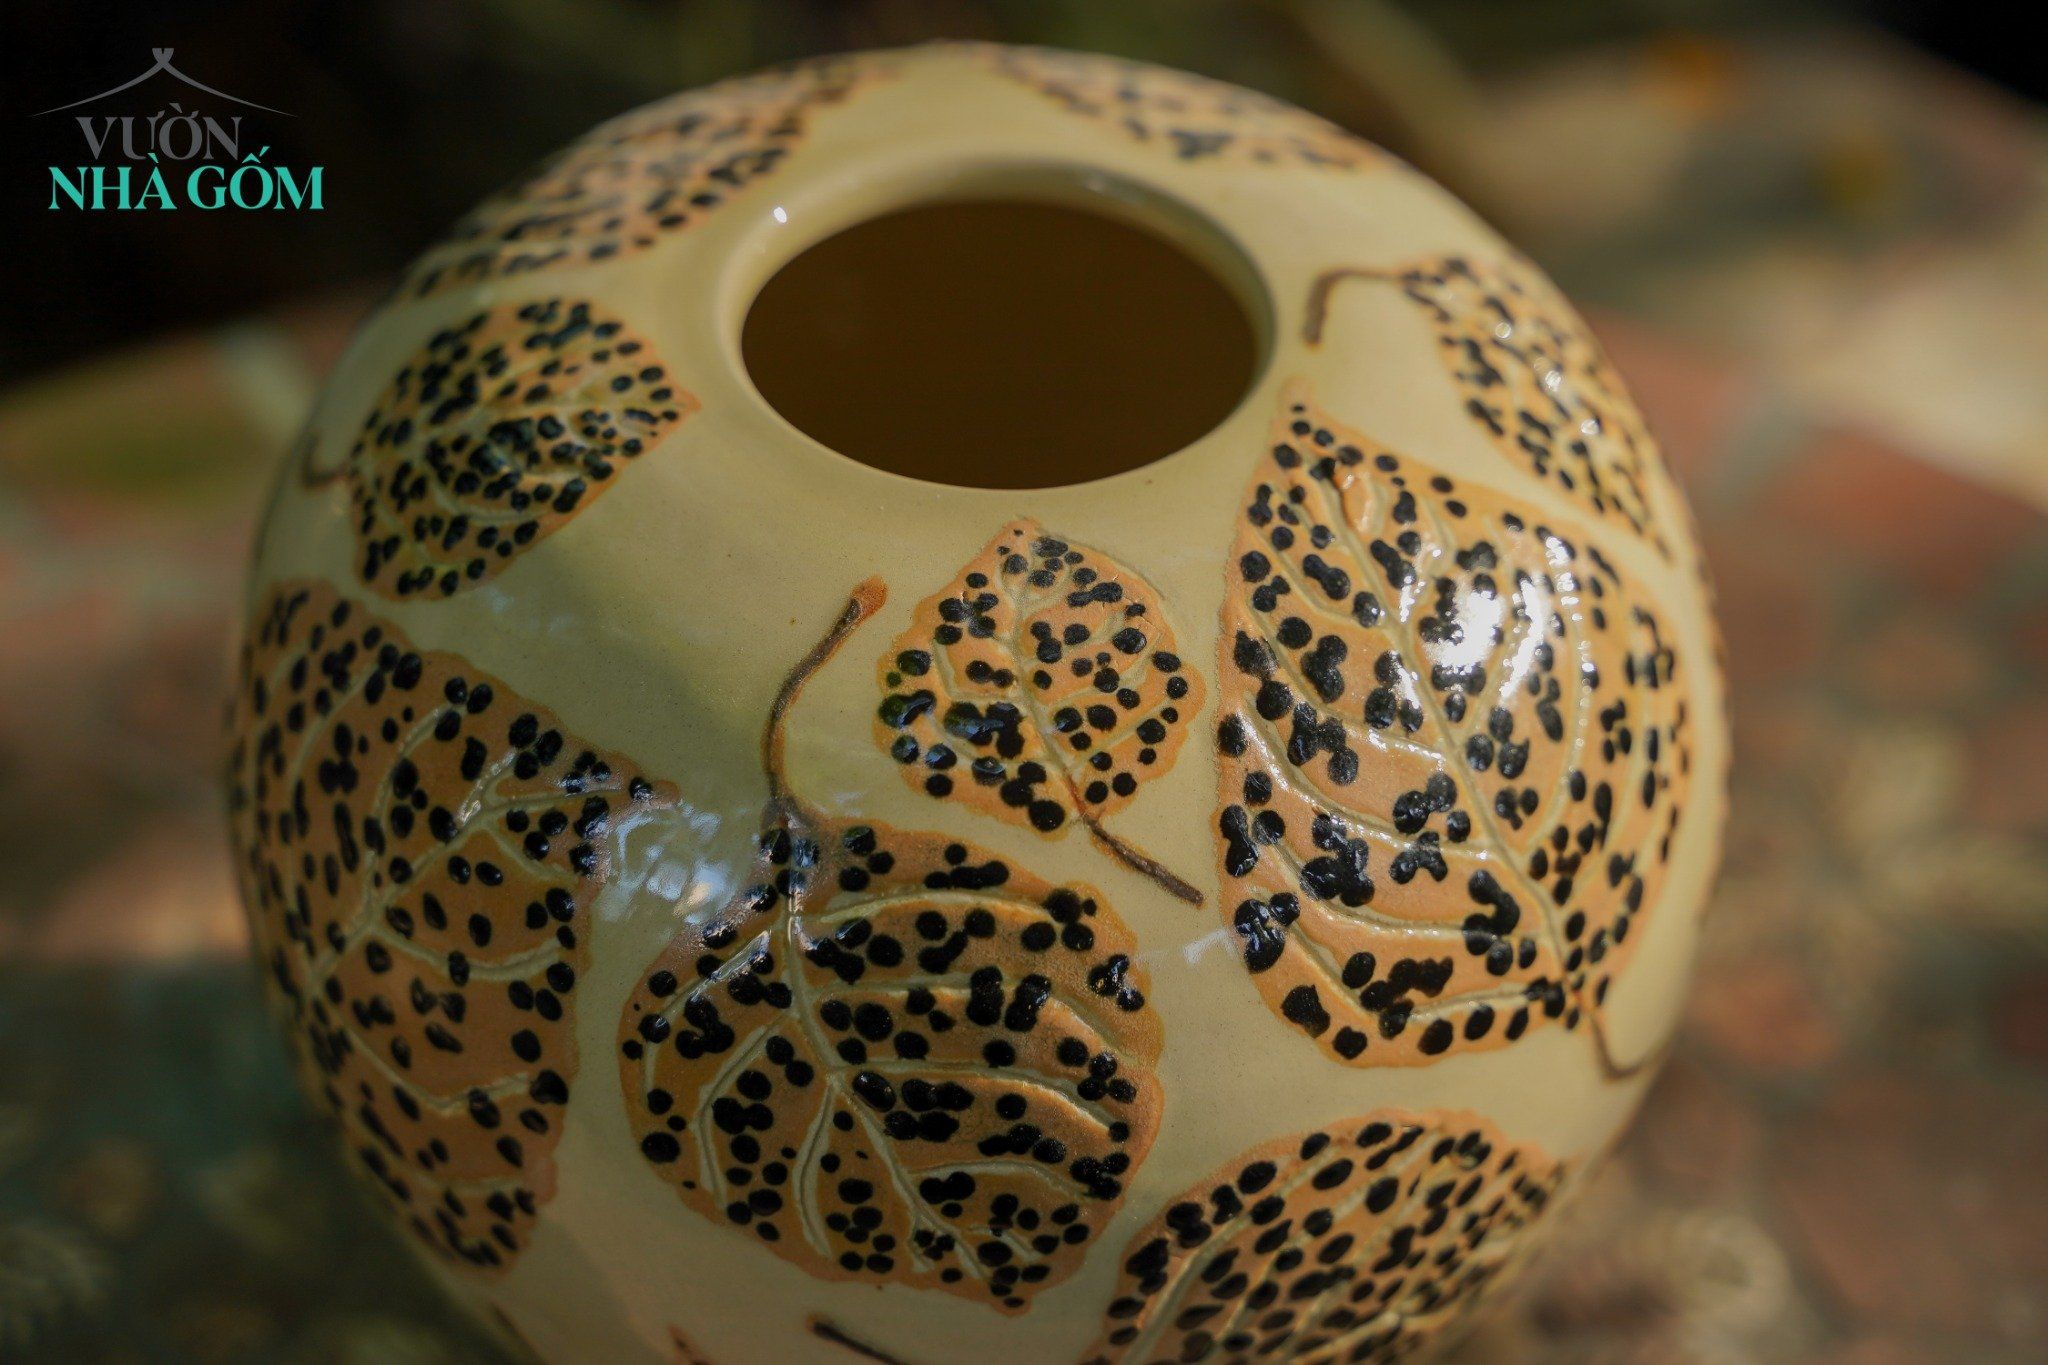  Bình gốm sáng tác độc bản, nghệ nhân người Philippines 